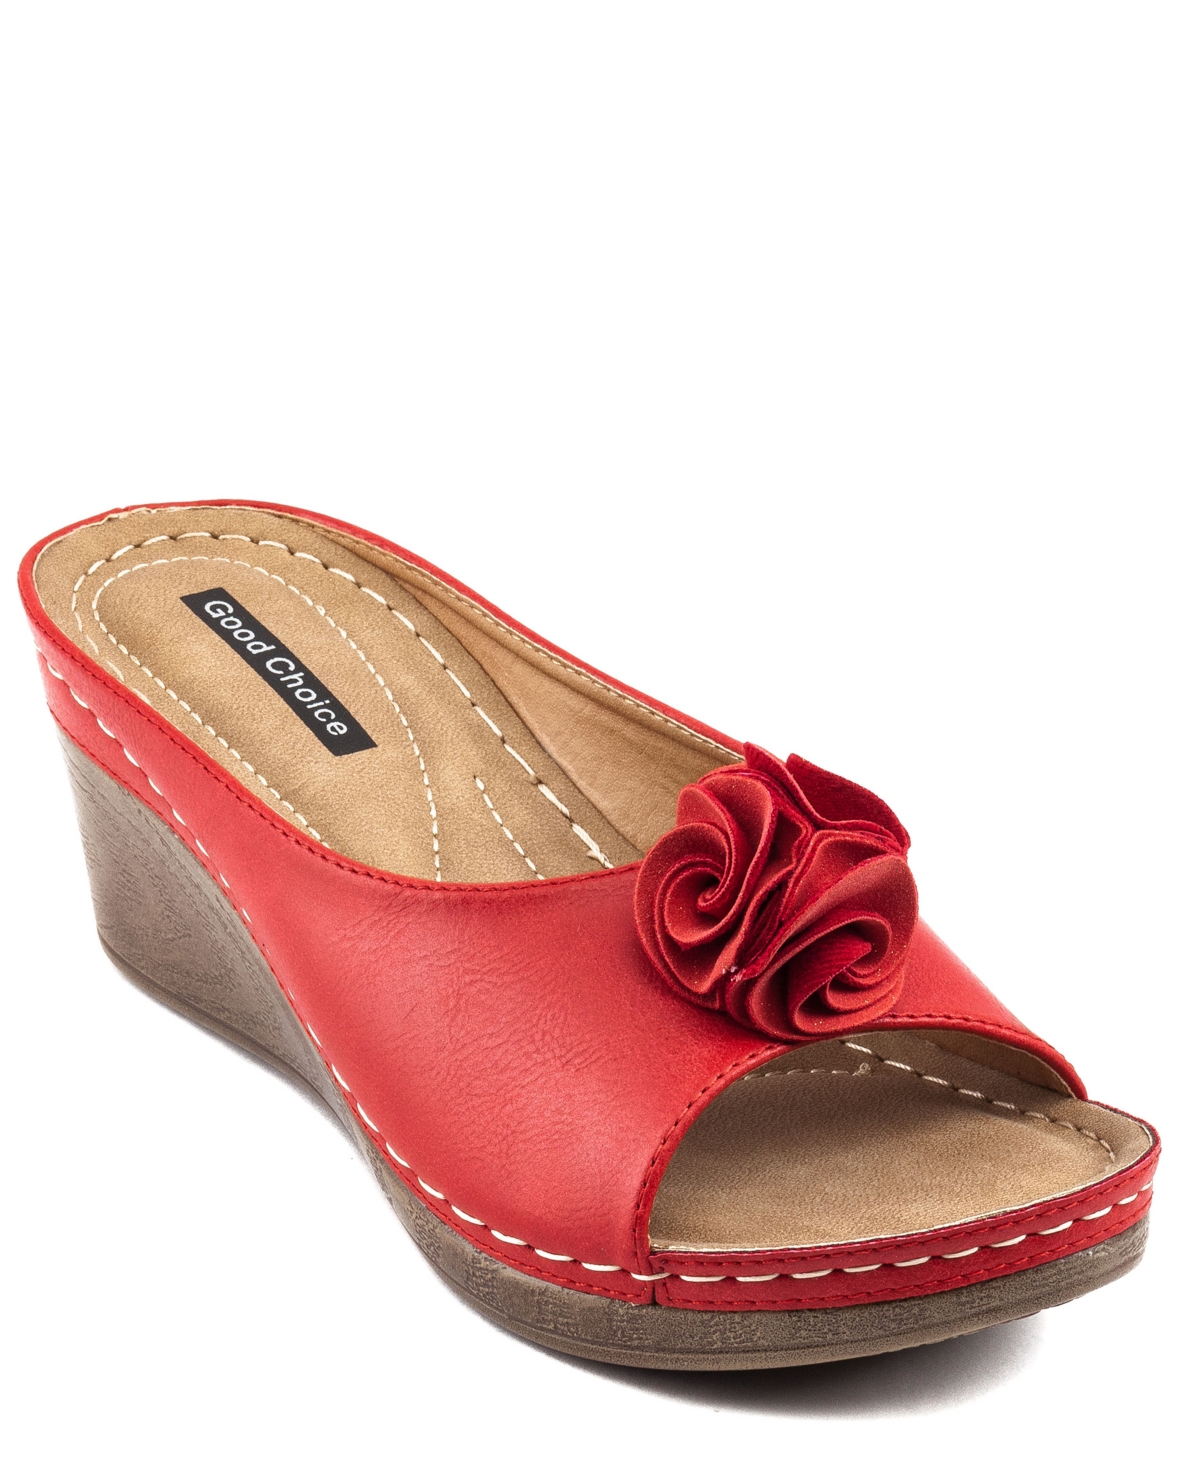 Women's Sydney Rosette Wedge Sandals - Blush